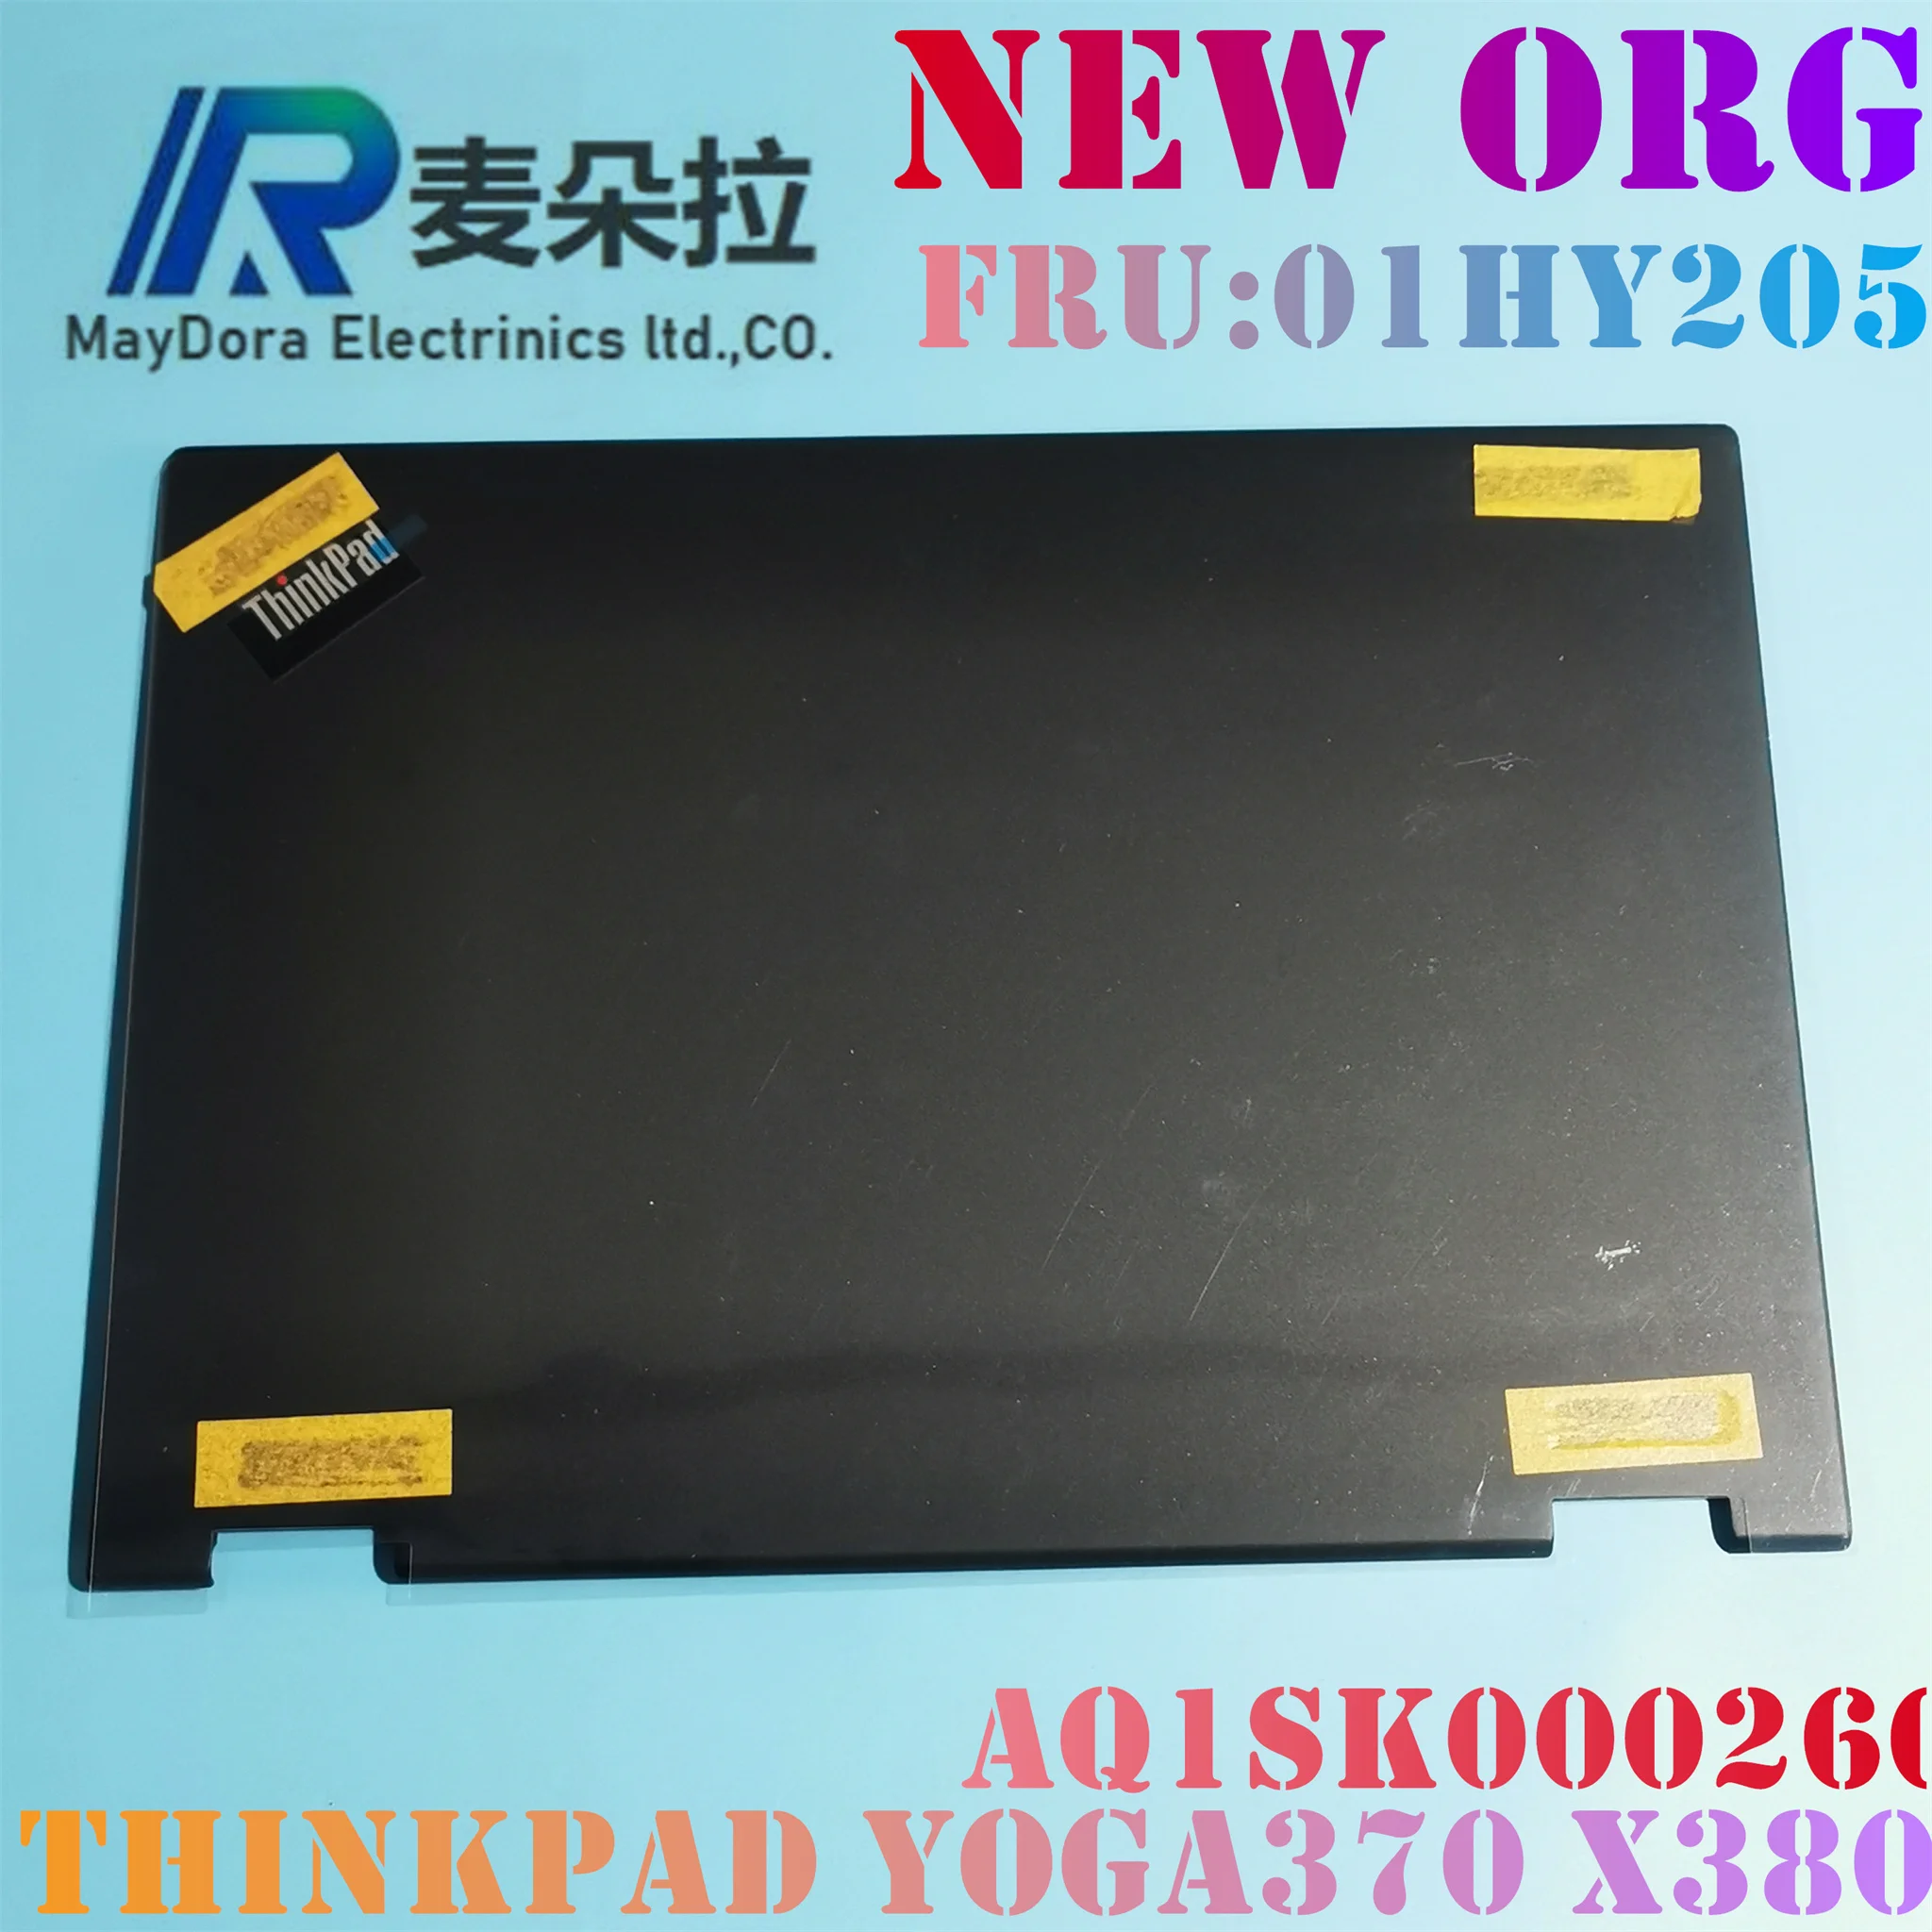 

NEW ORG Laptop case for LENOVO THINKPAD Yoga370 X380 Yoga LCD BACK COVER Front bezel bottom base BLACK 01HY205 02DA142